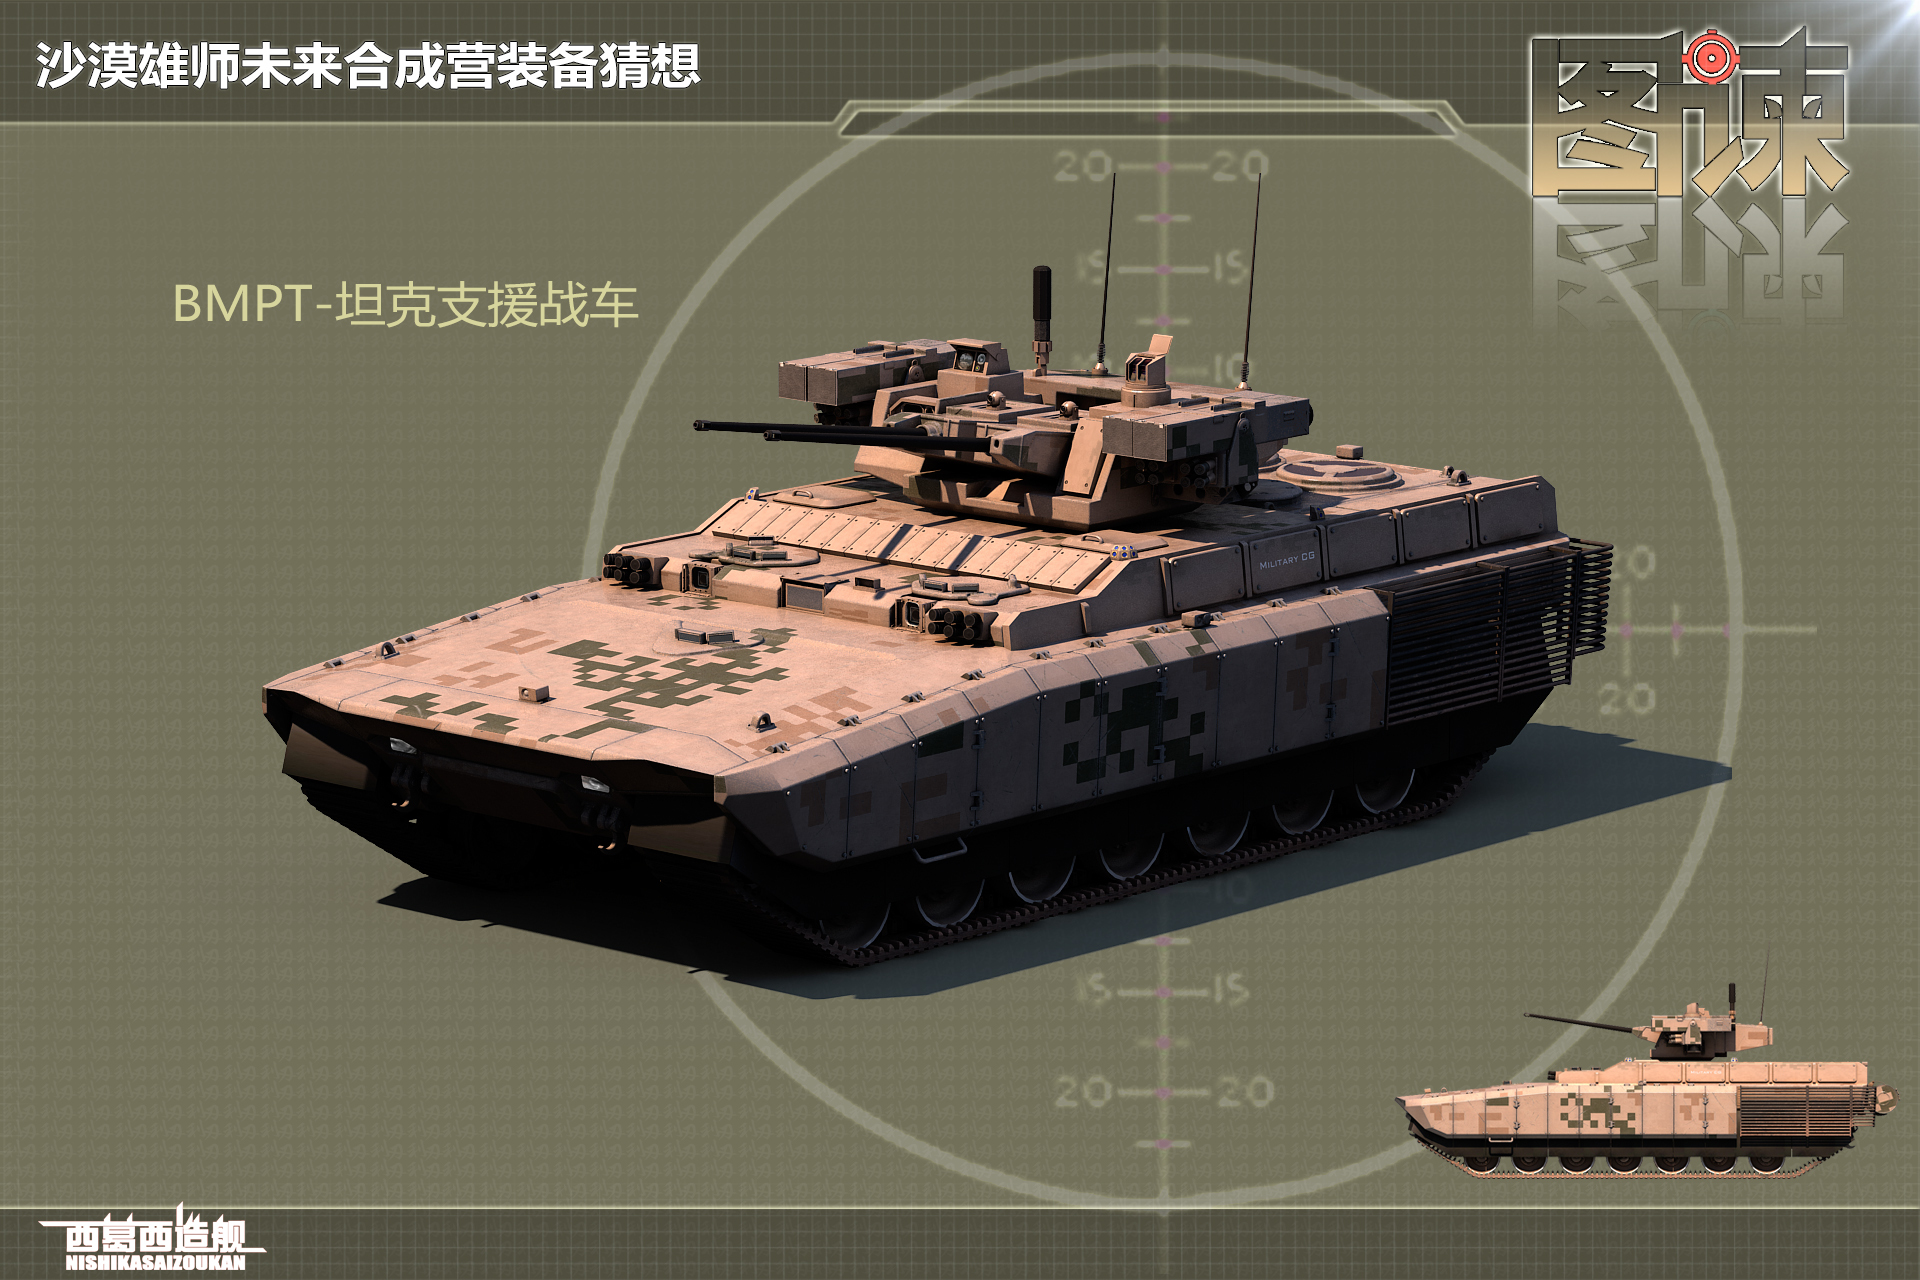 图谏cg中国第四代坦克亮相装备140毫米巨炮